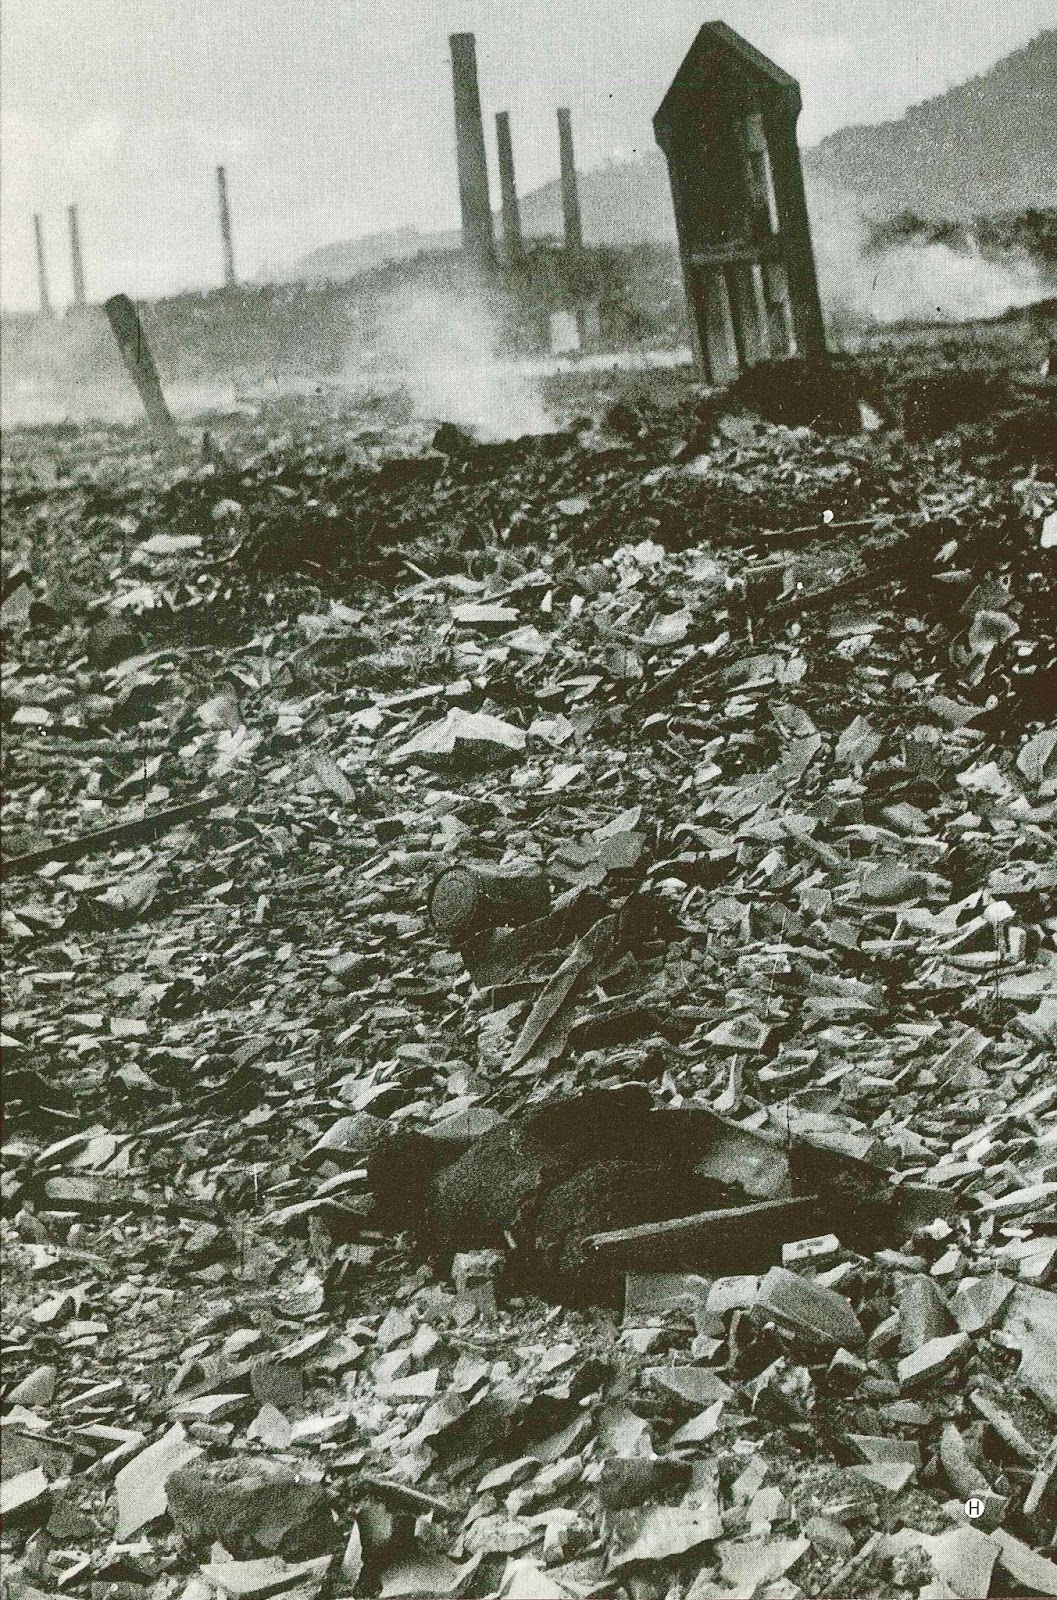 Japan No Atomic Bomb Jnab 日本原爆禁止の会 長崎原子爆弾の周辺は 全壊して散在した破片上に炭化した焼死体 が散在していた 長崎